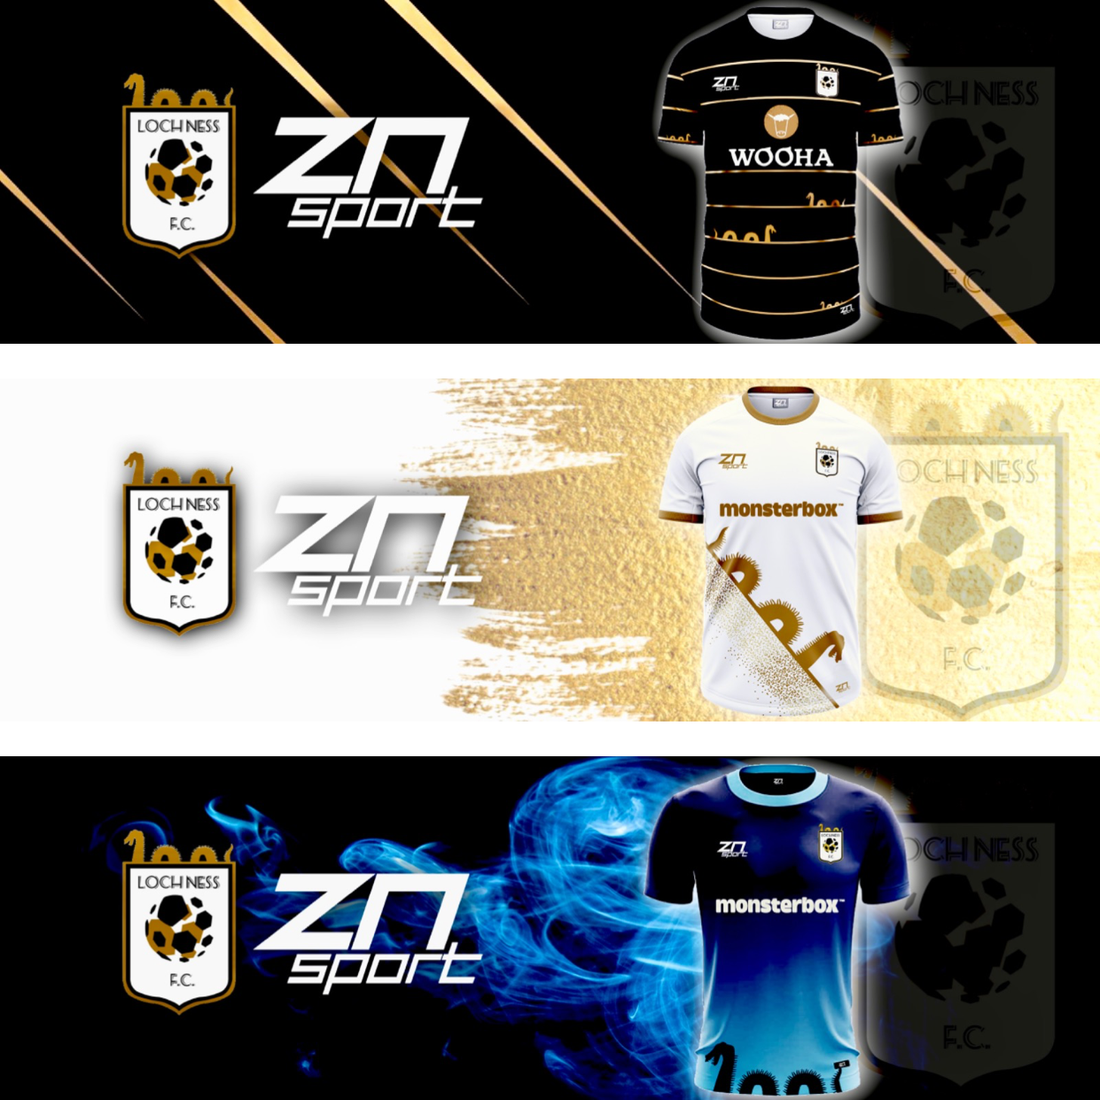 ZN Sport & Loch Ness FC in 3 year kit deal